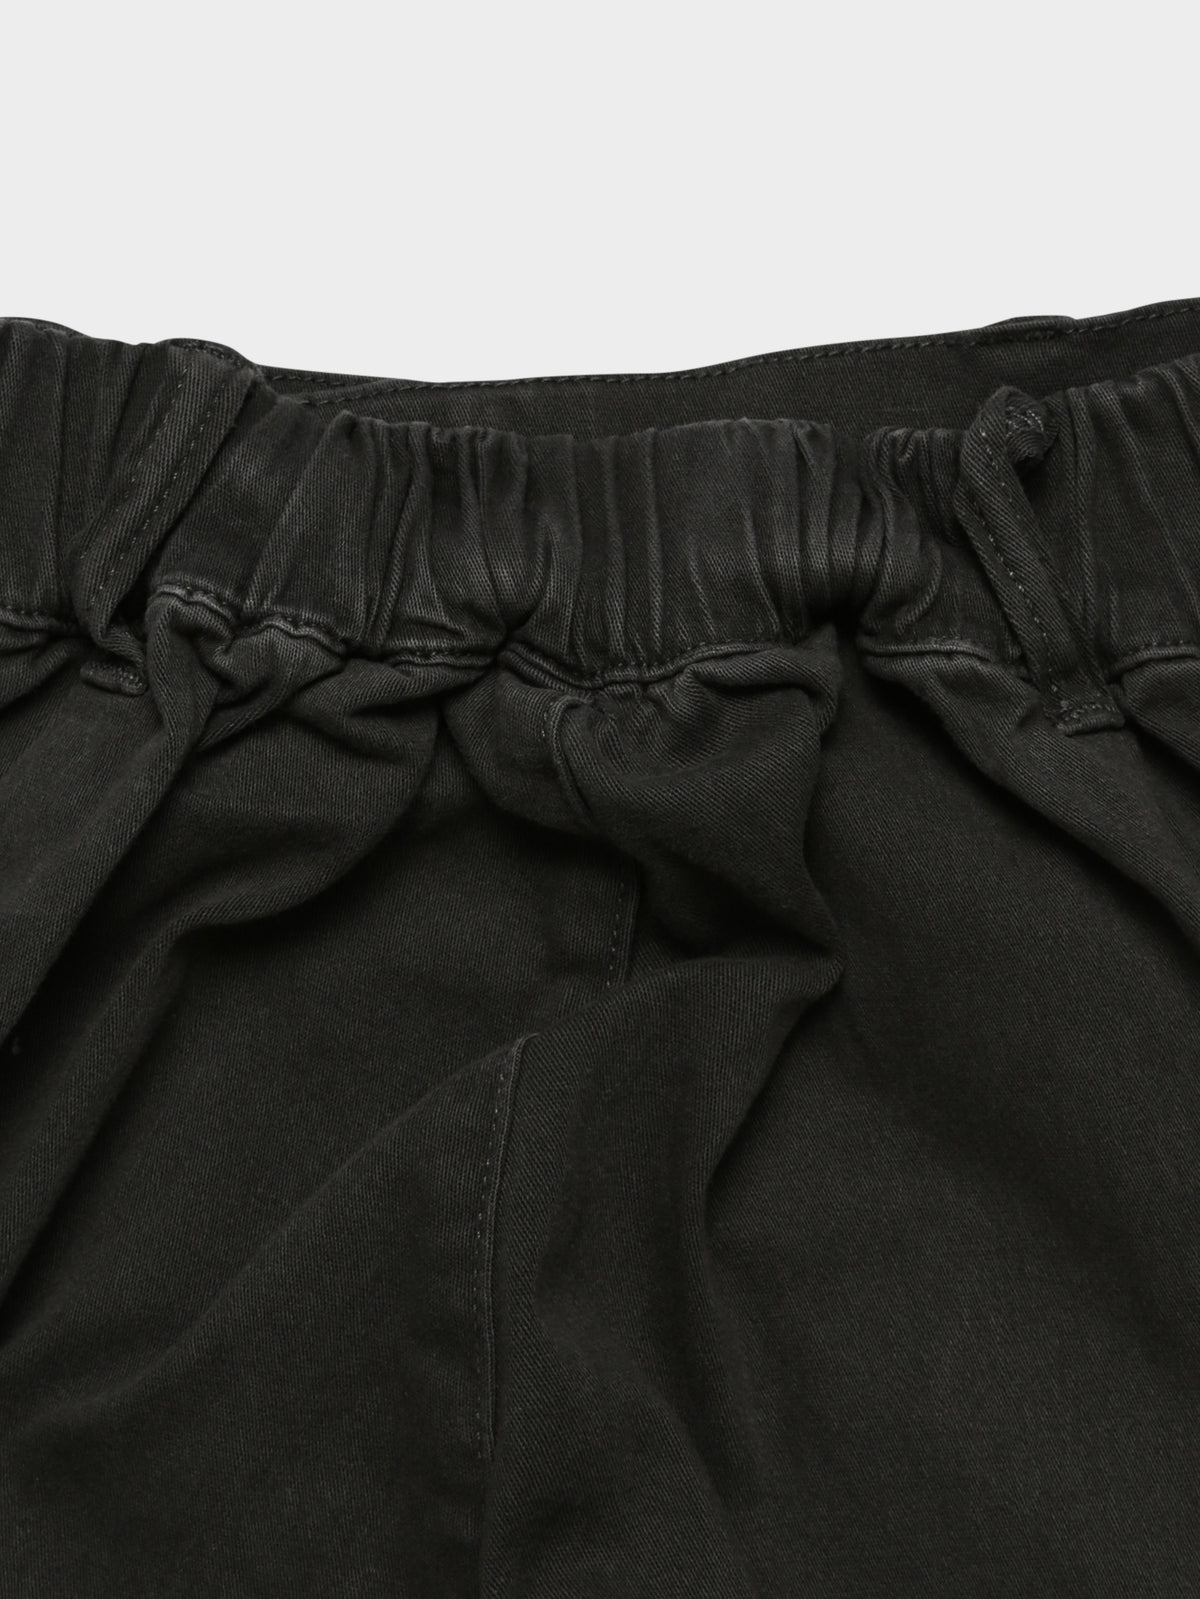 Davina Cargo Pants in Black